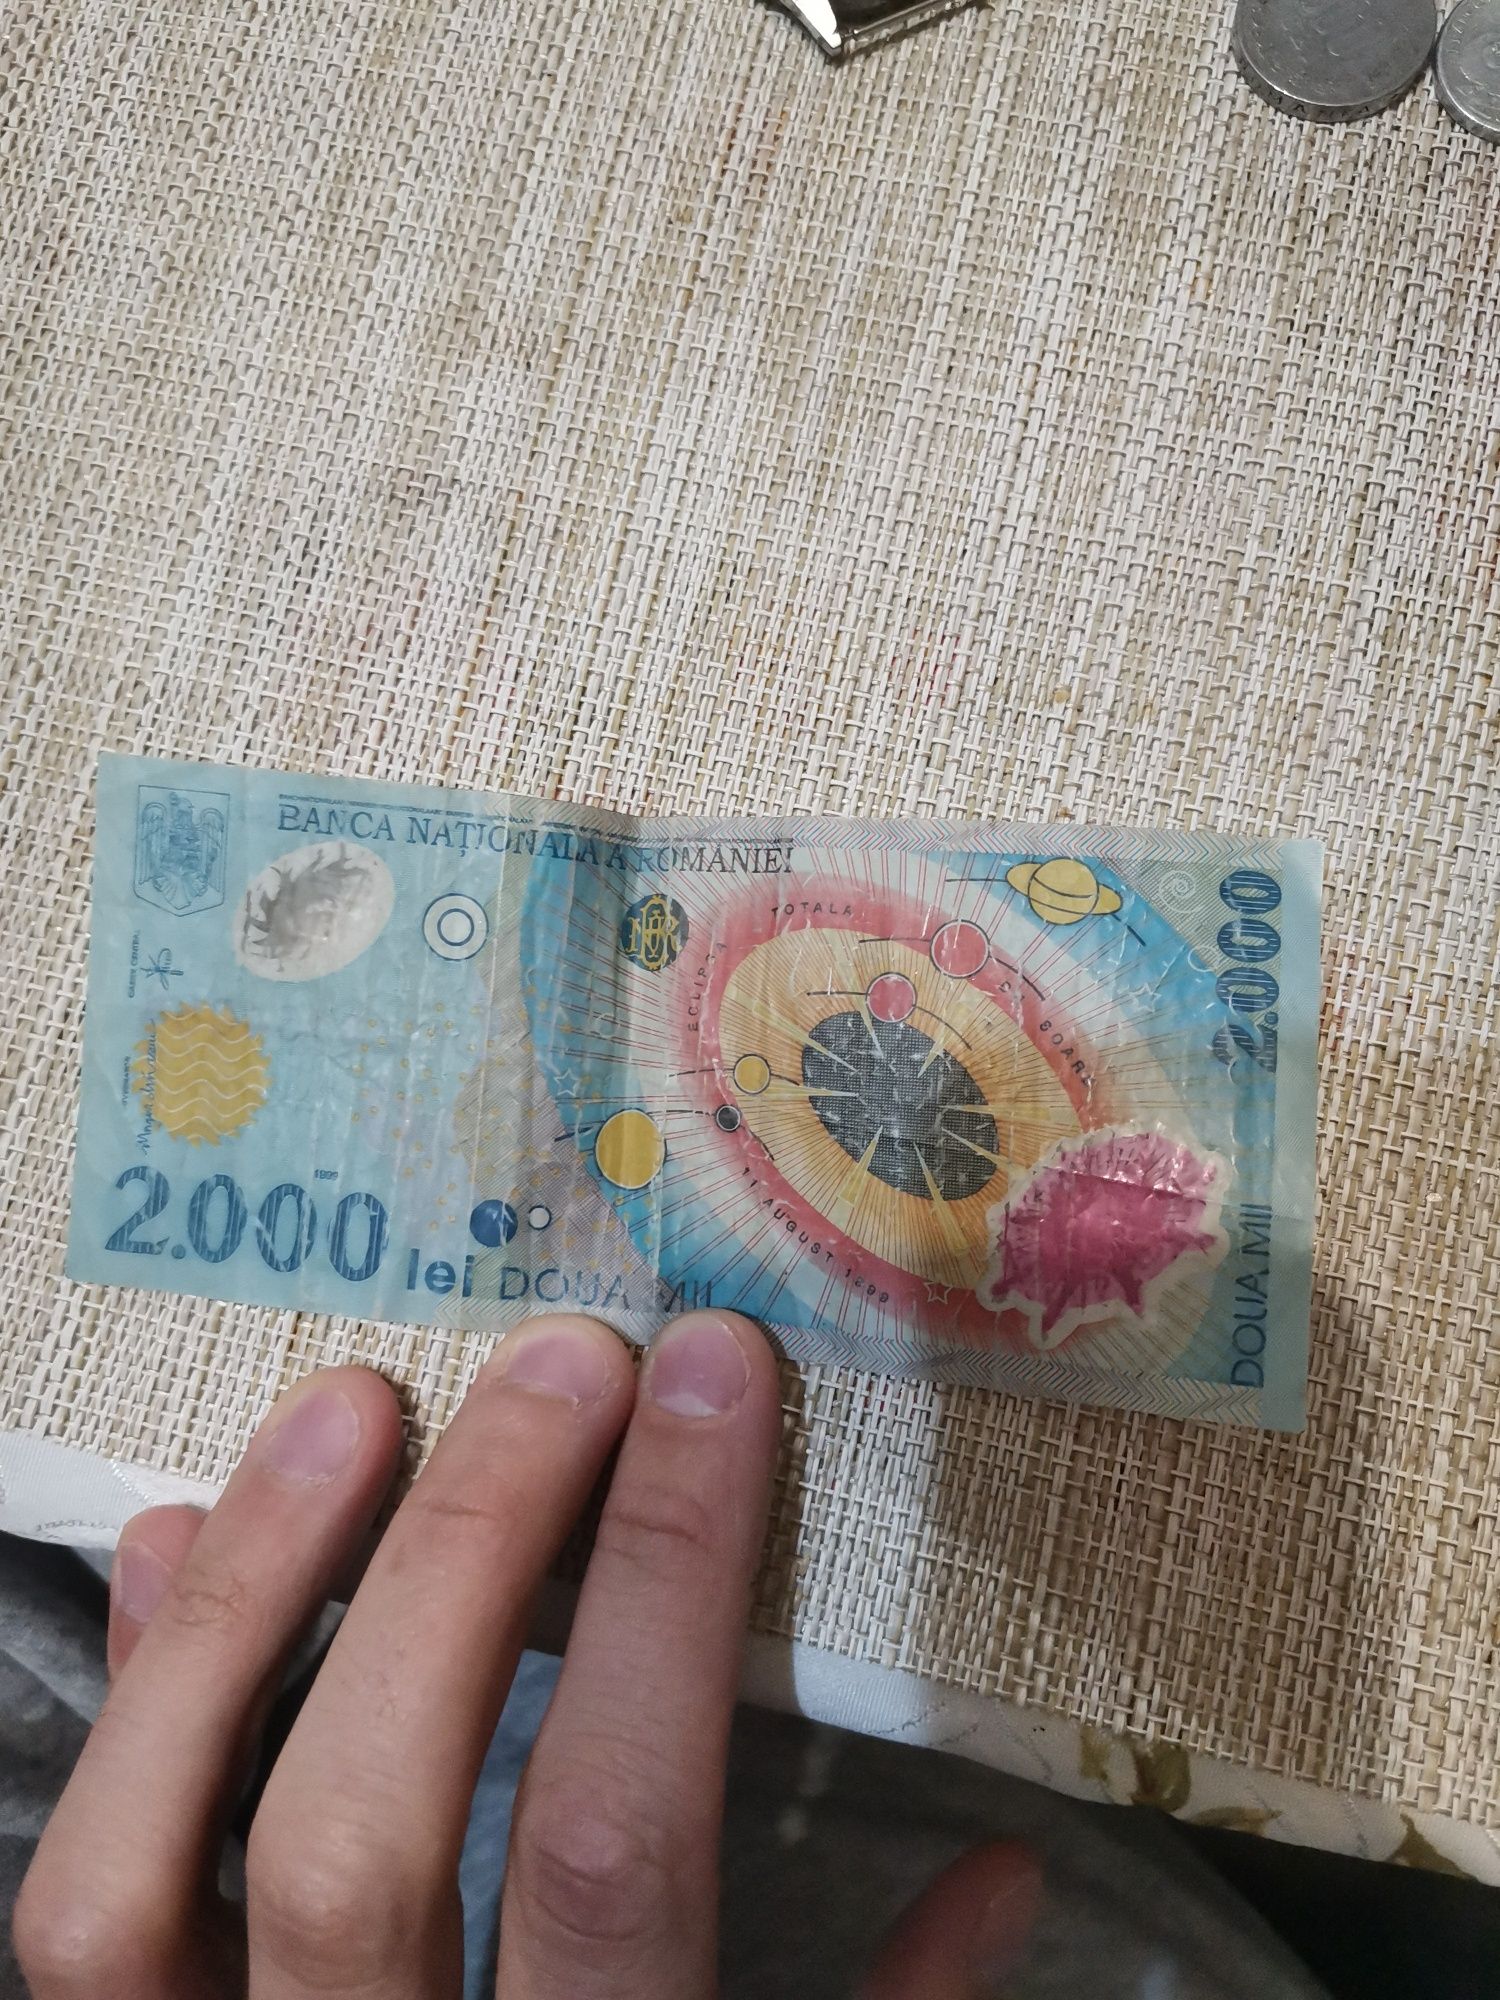 Bancnota 2000 de lei